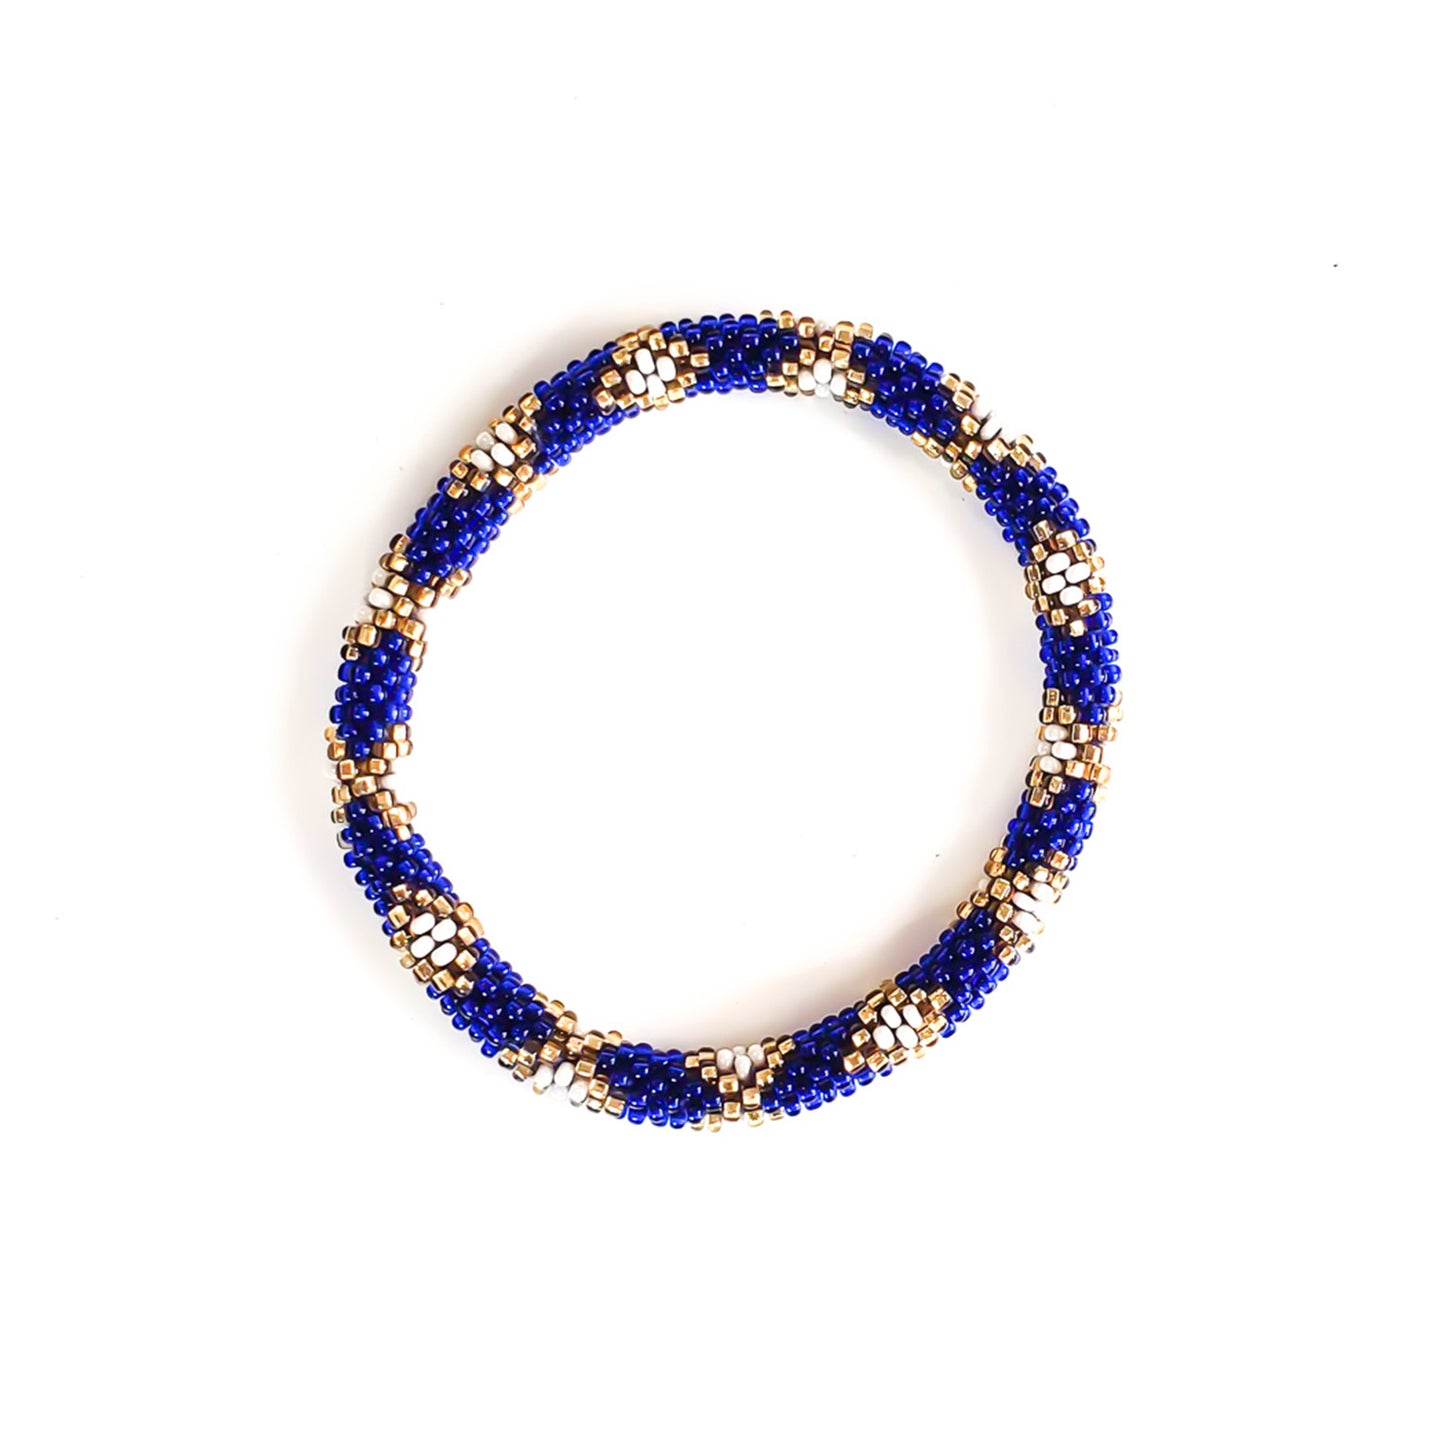 Roll-On Bracelet - Invite Only  (Navy Blue, White & Gold)